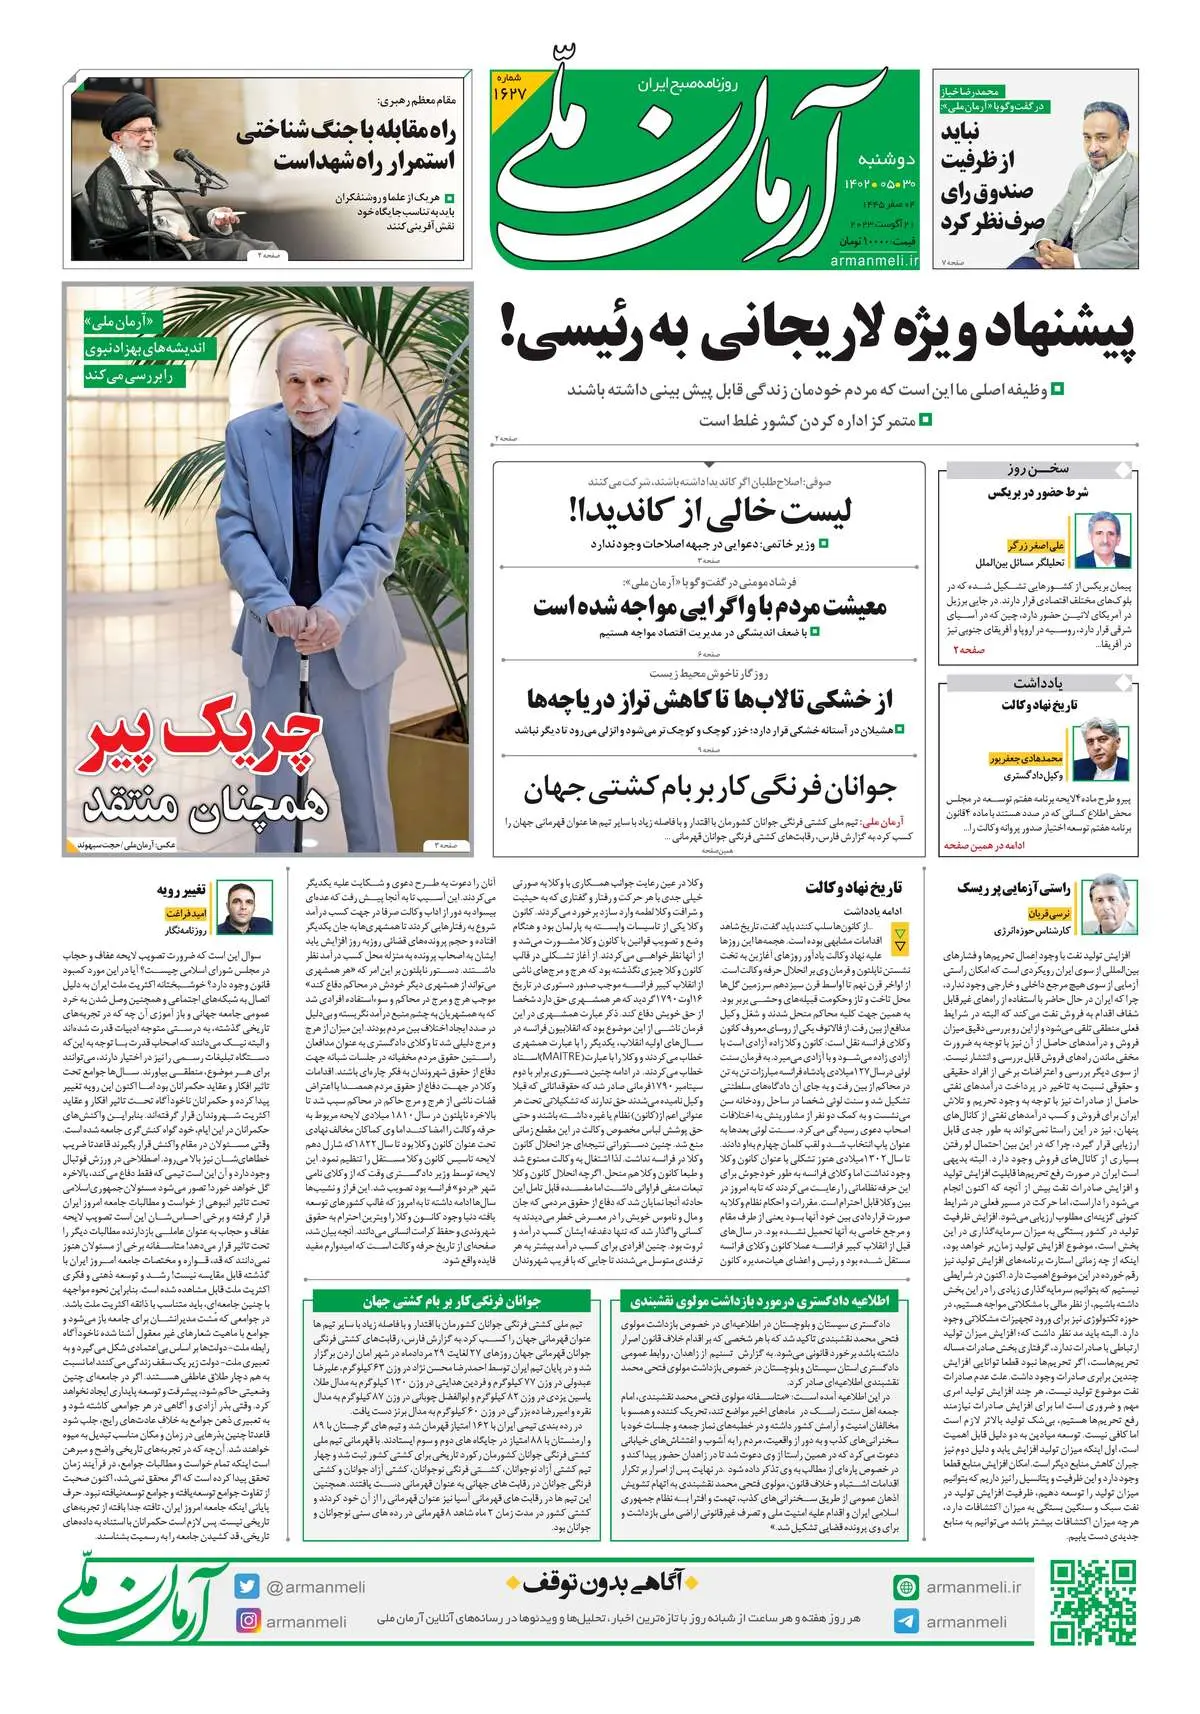 روزنامه آرمان ملی - دوشنبه 30 مرداد - شماره 1627